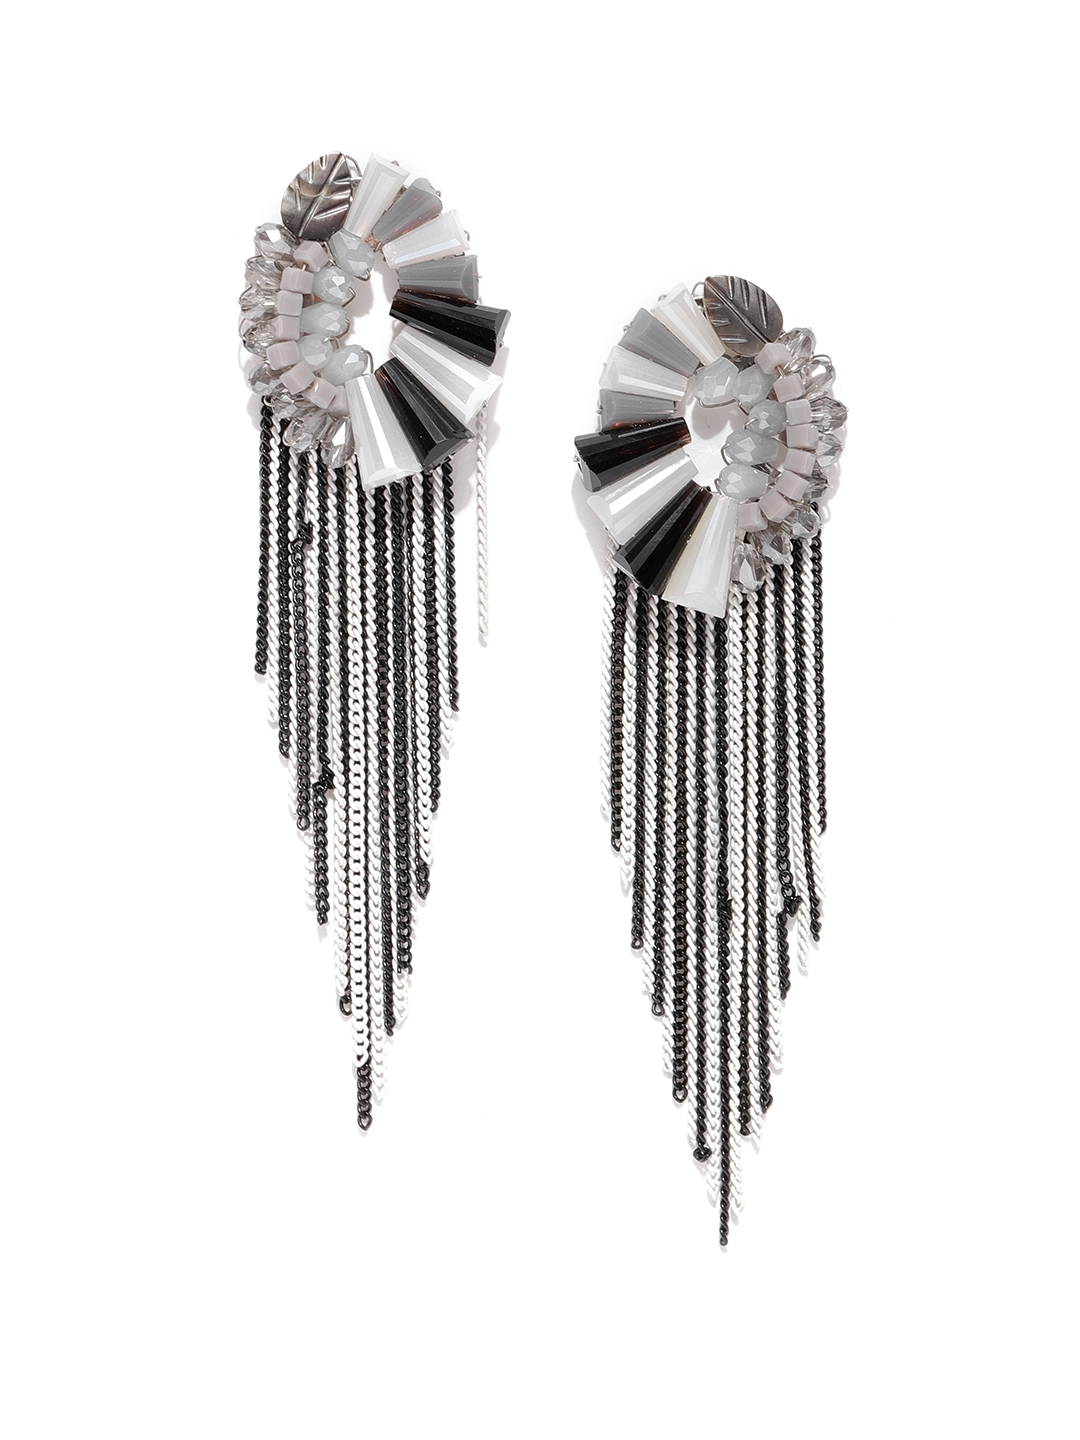 Buy Smokey Grey Black Diamond Crystal Drop Earrings Teardrop Online in  India  Etsy